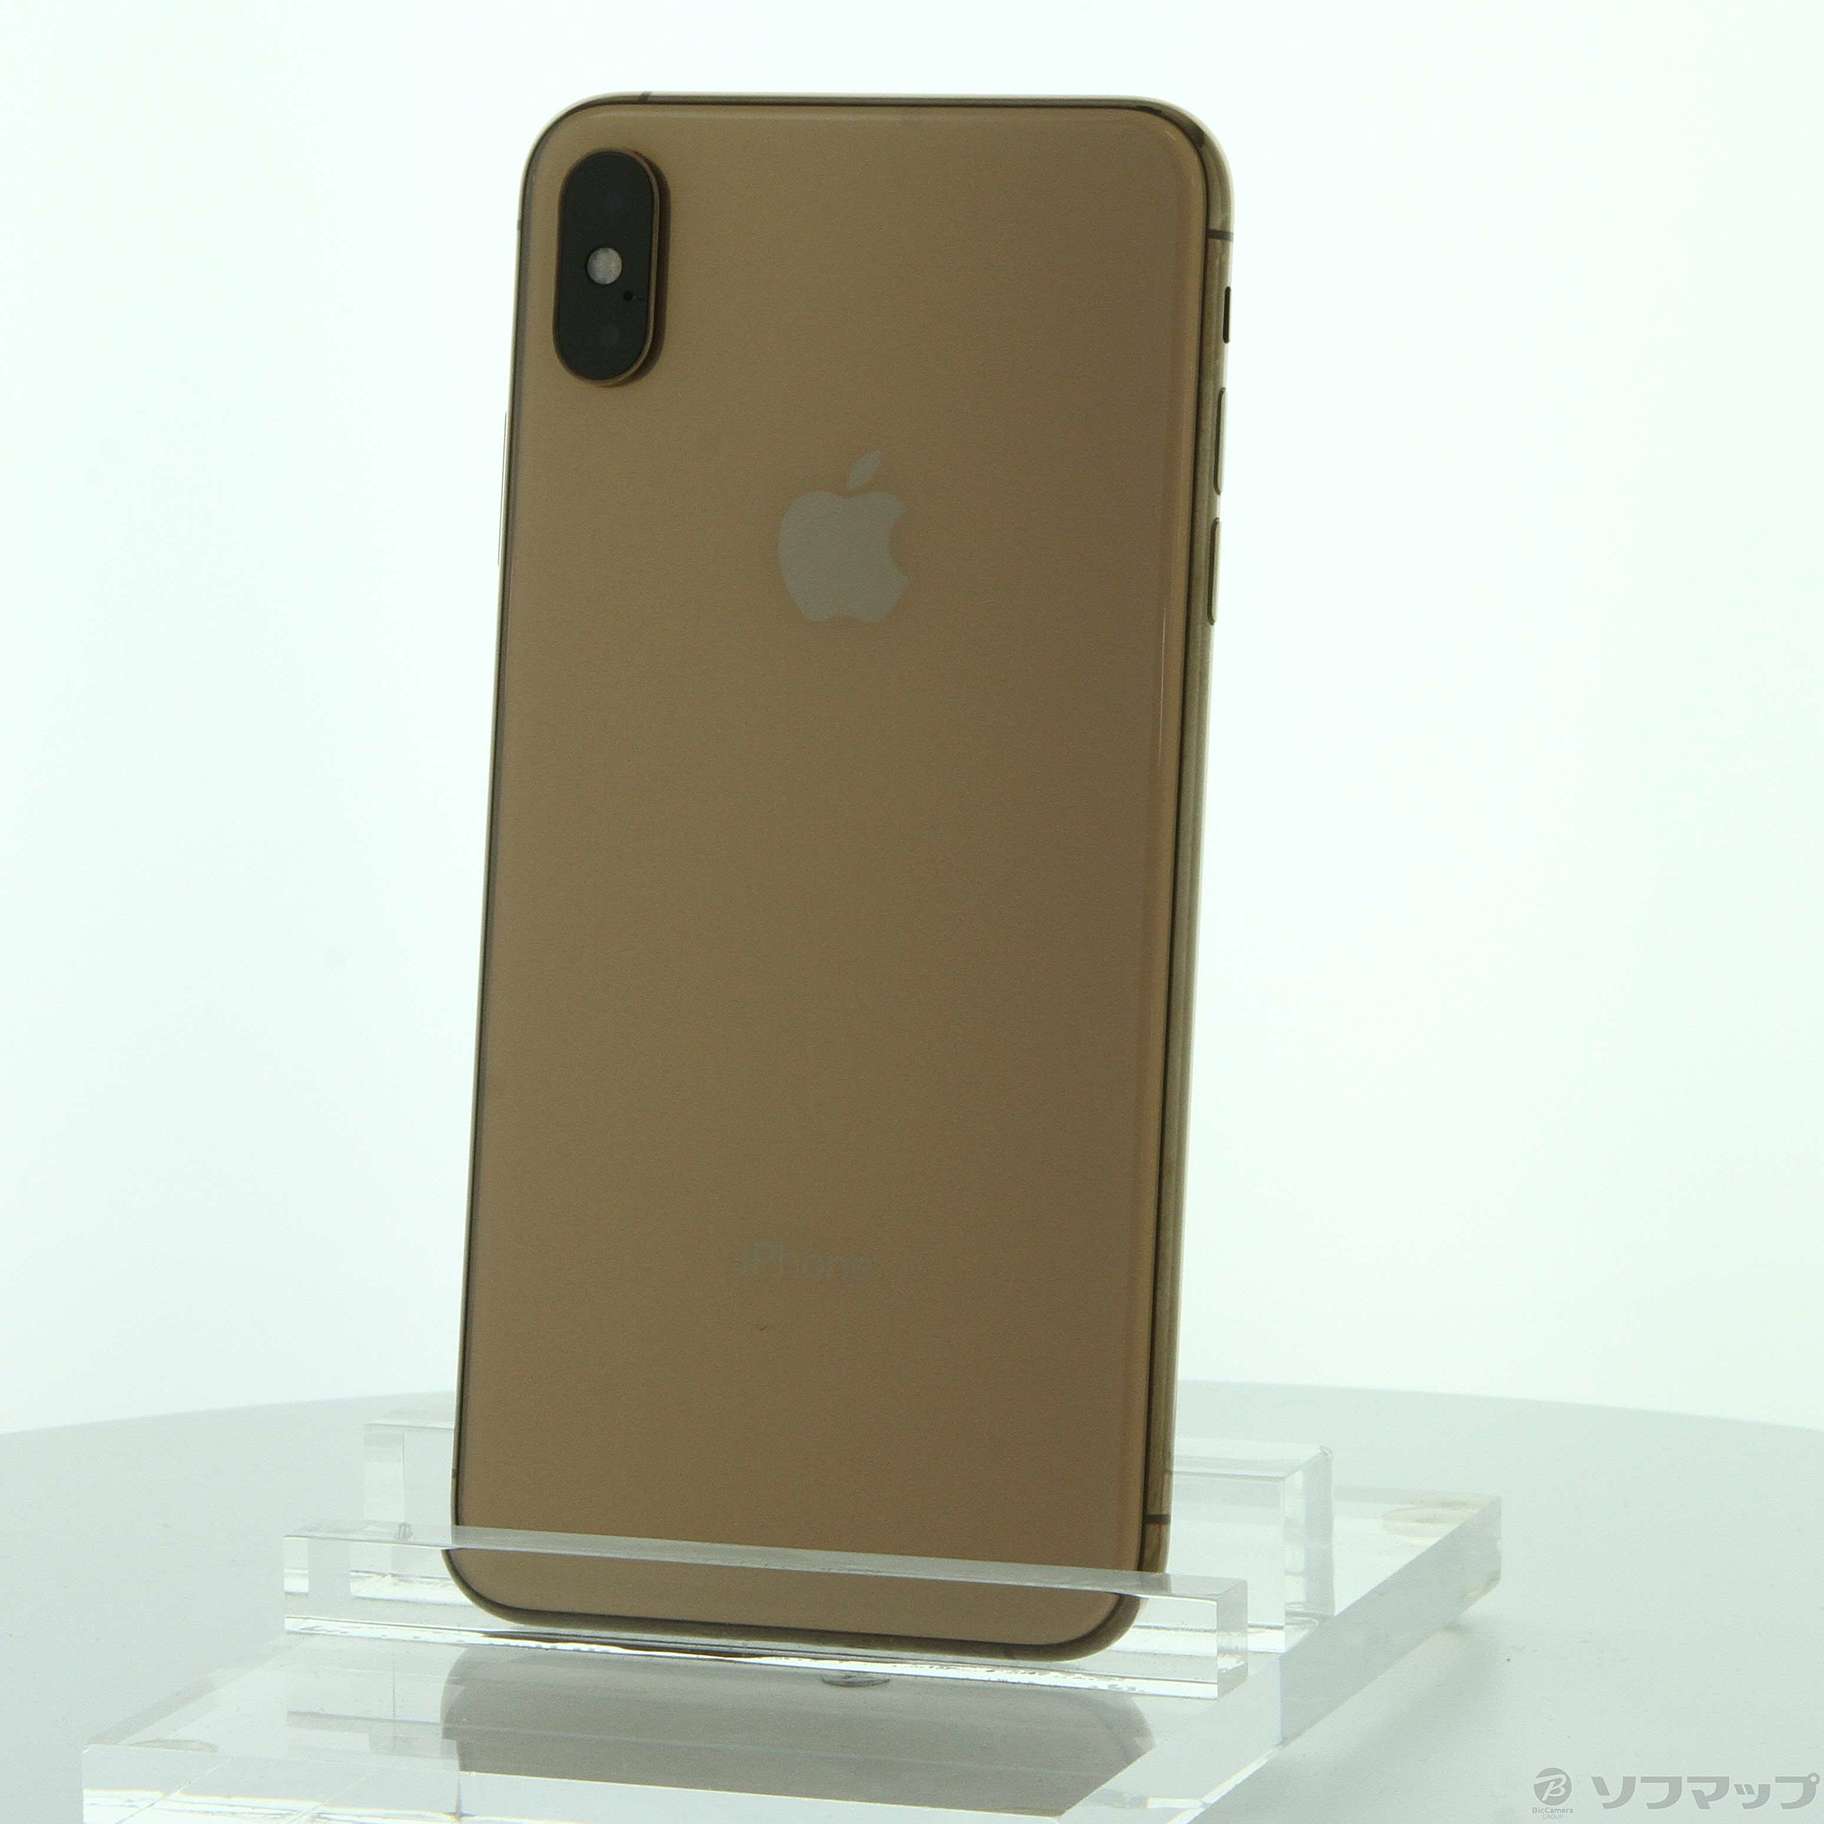 Apple アップル iPhoneXS Max 256GB ゴールド